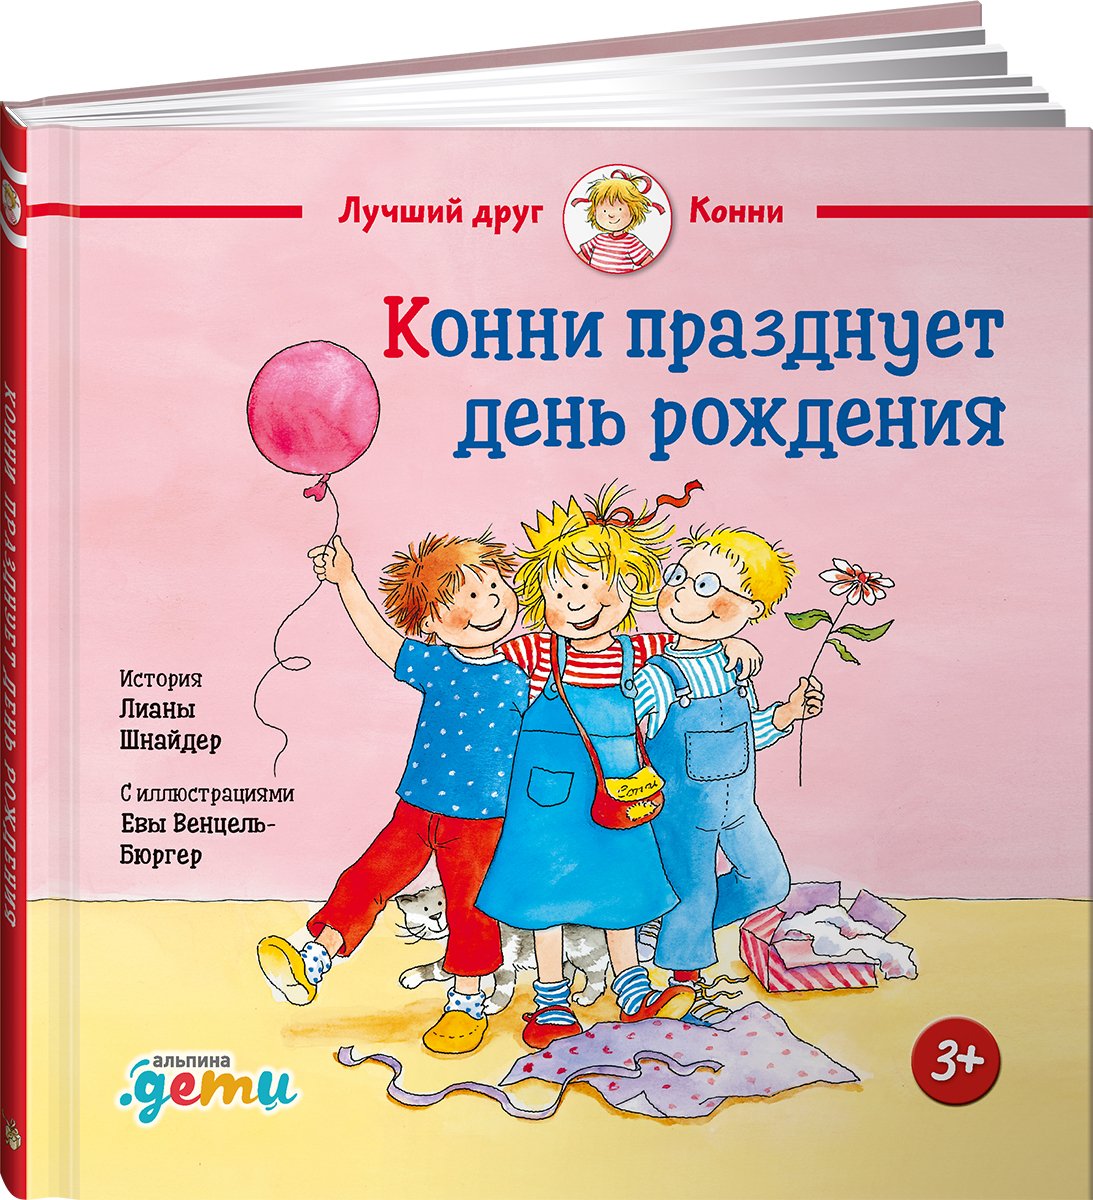 Zakazat.ru: Конни празднует день рождения.. Шнайдер Лиана